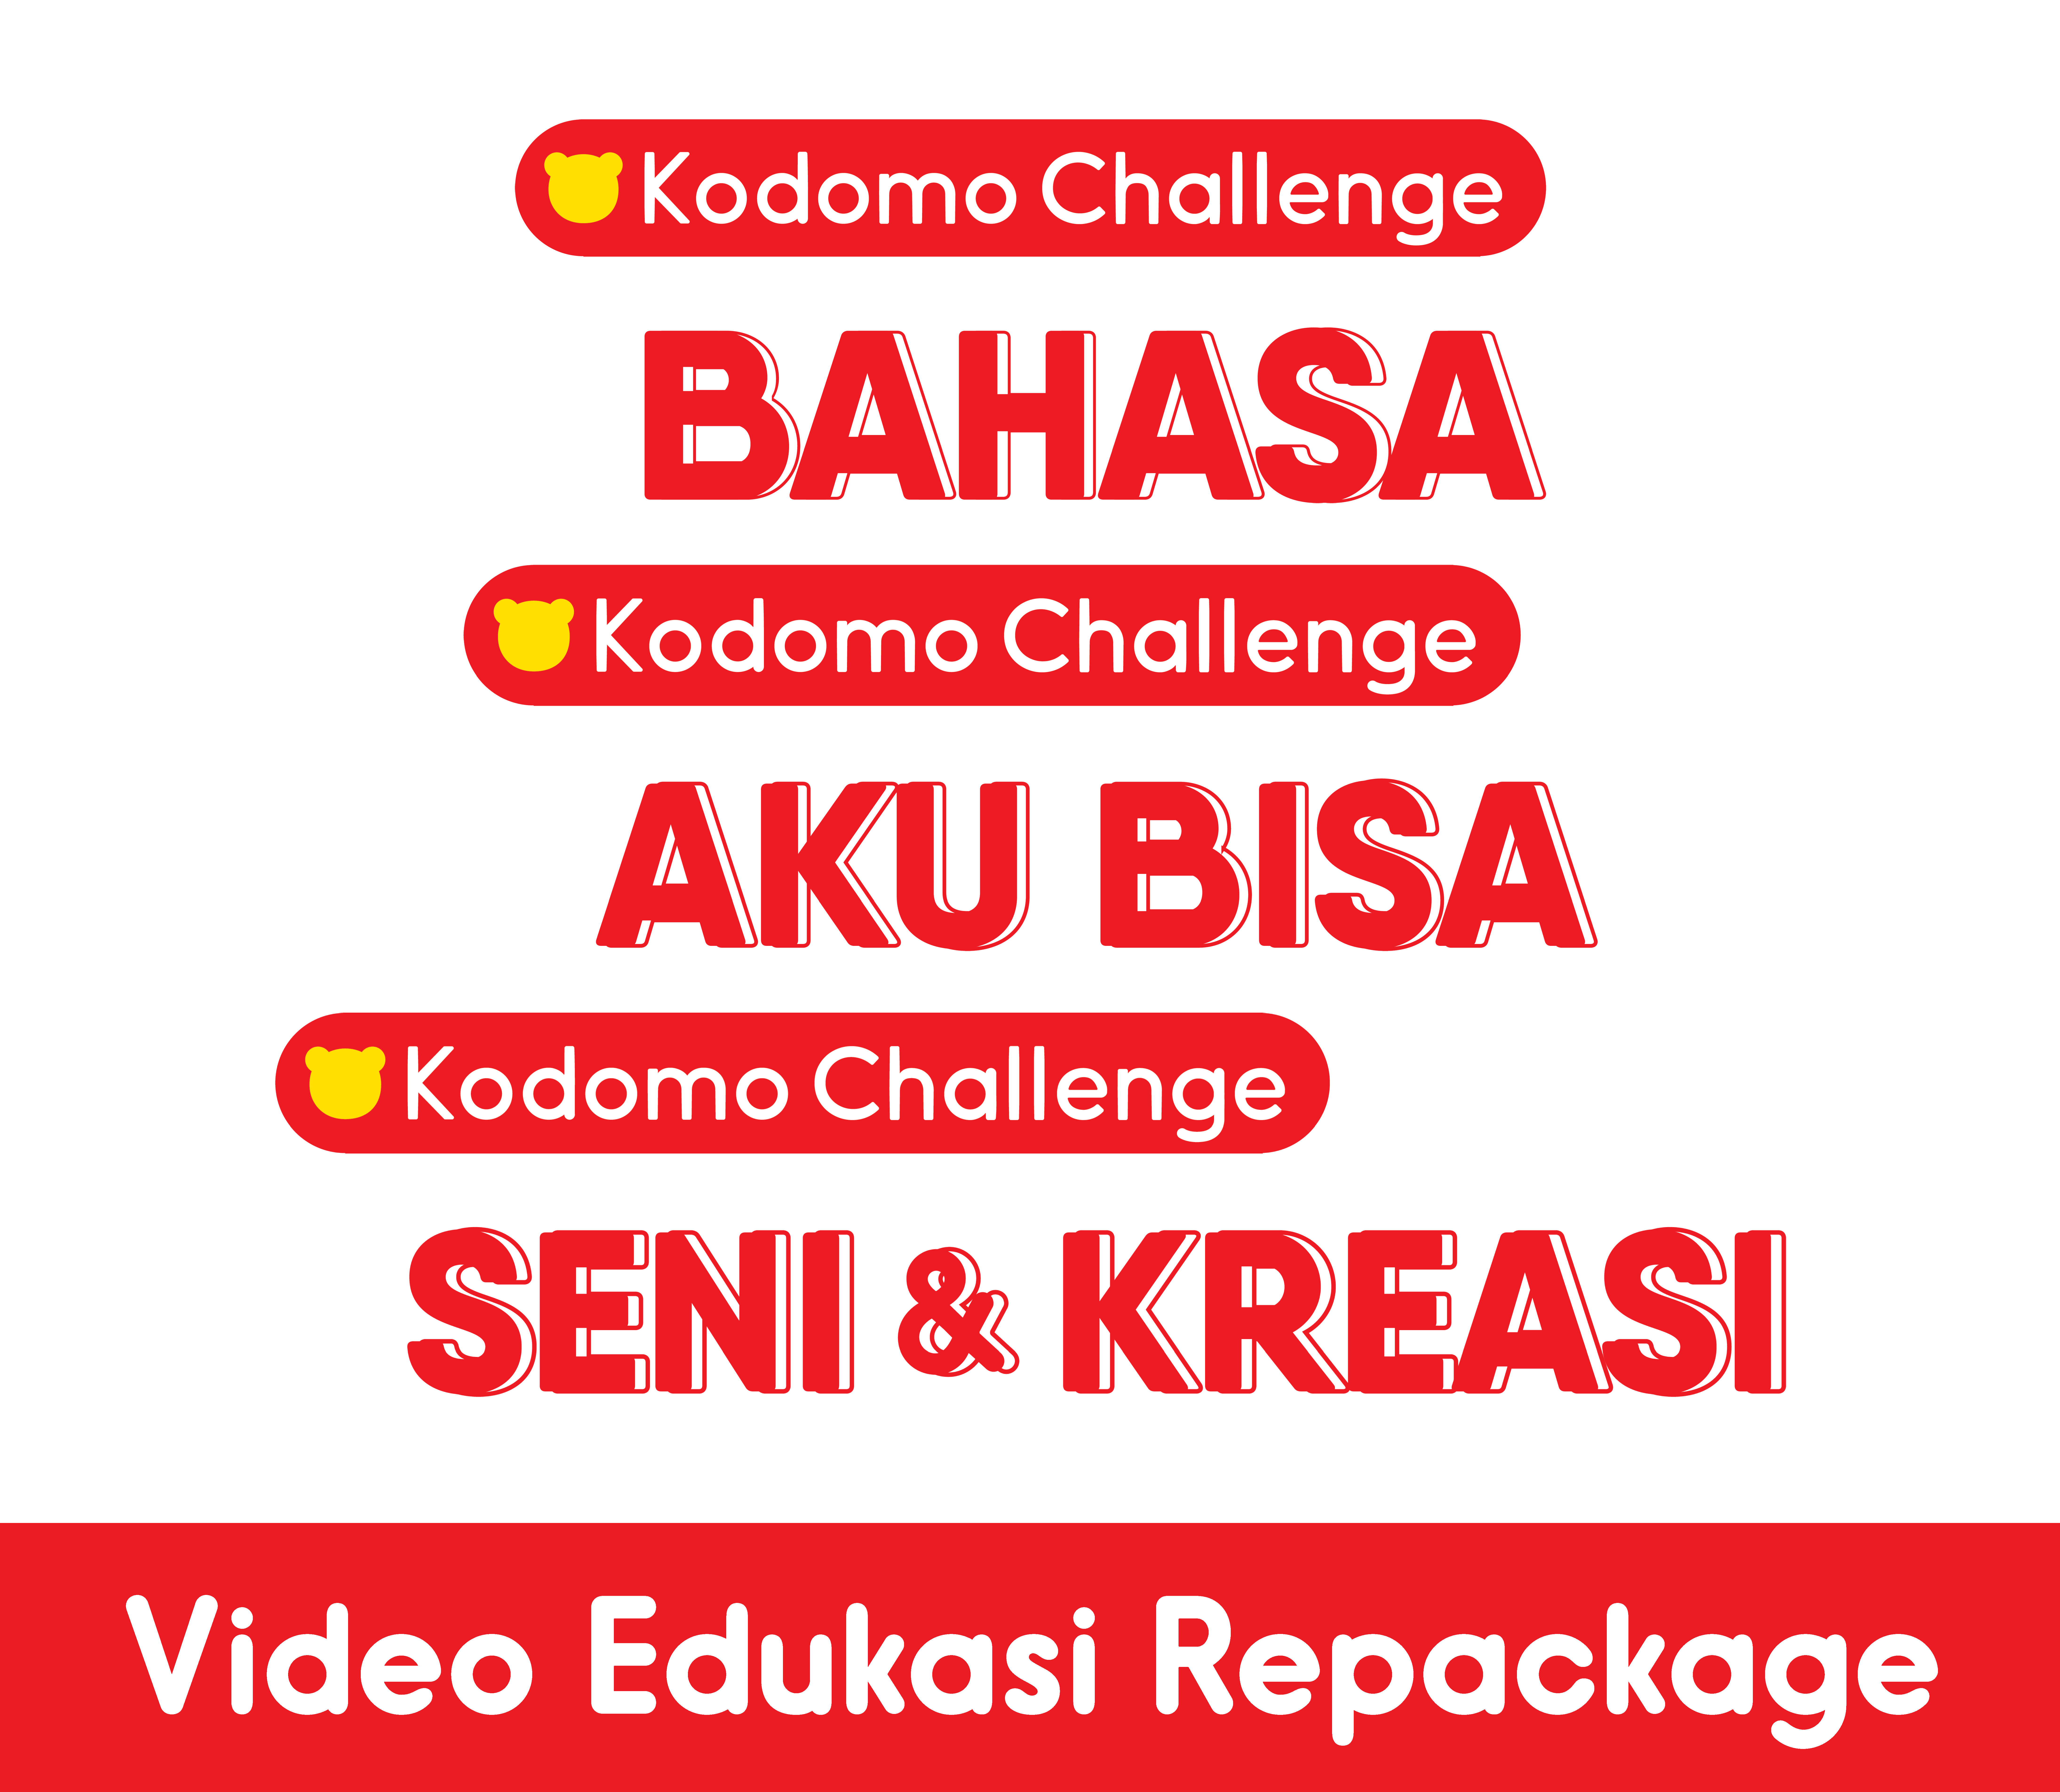 Repackage Kodomo Challenge